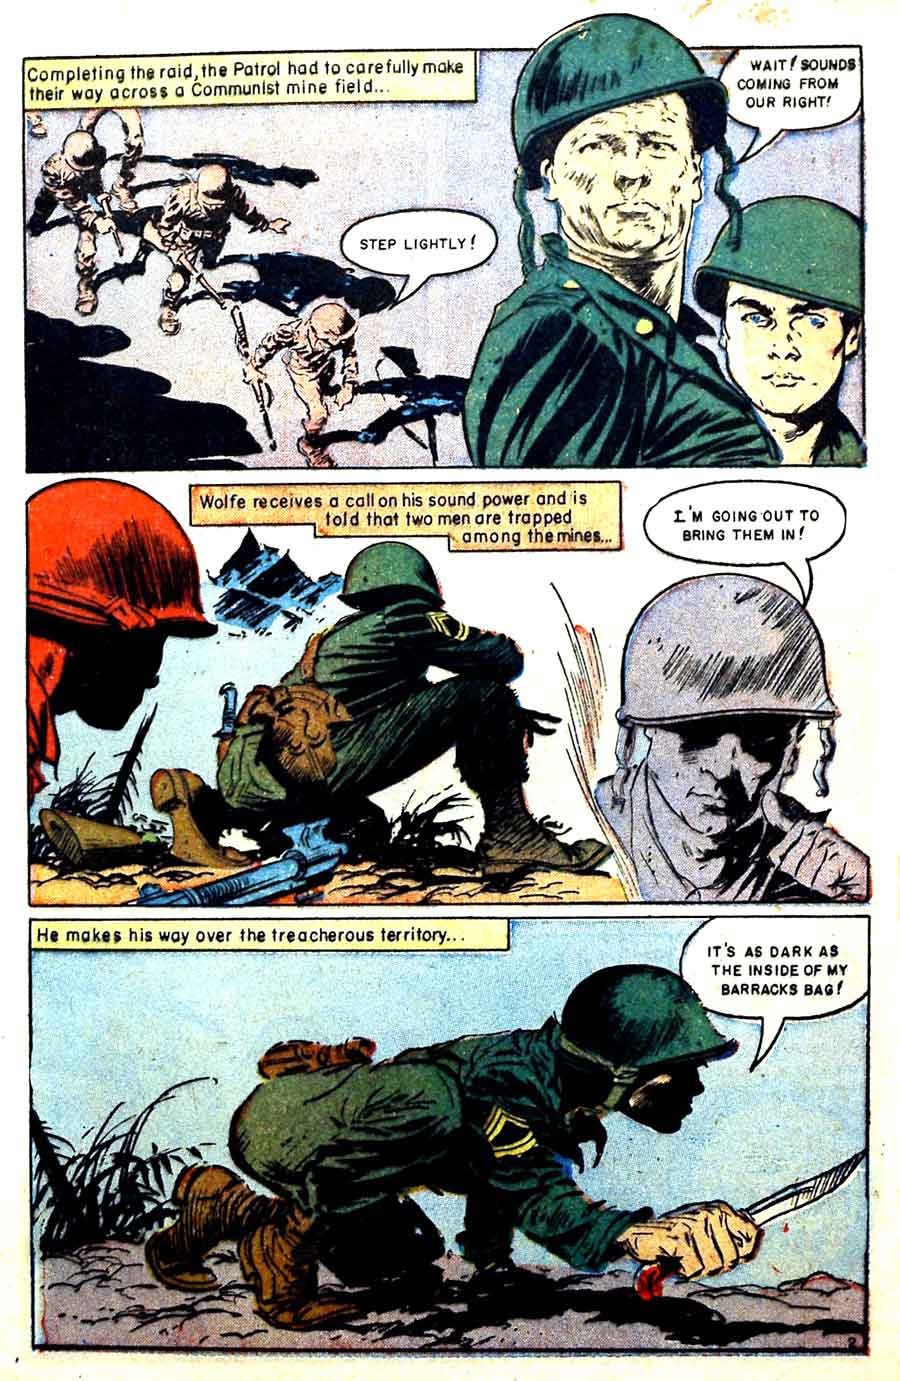 Heroic Comics #87 golden age 1950s war comic book page art by Frank Frazetta